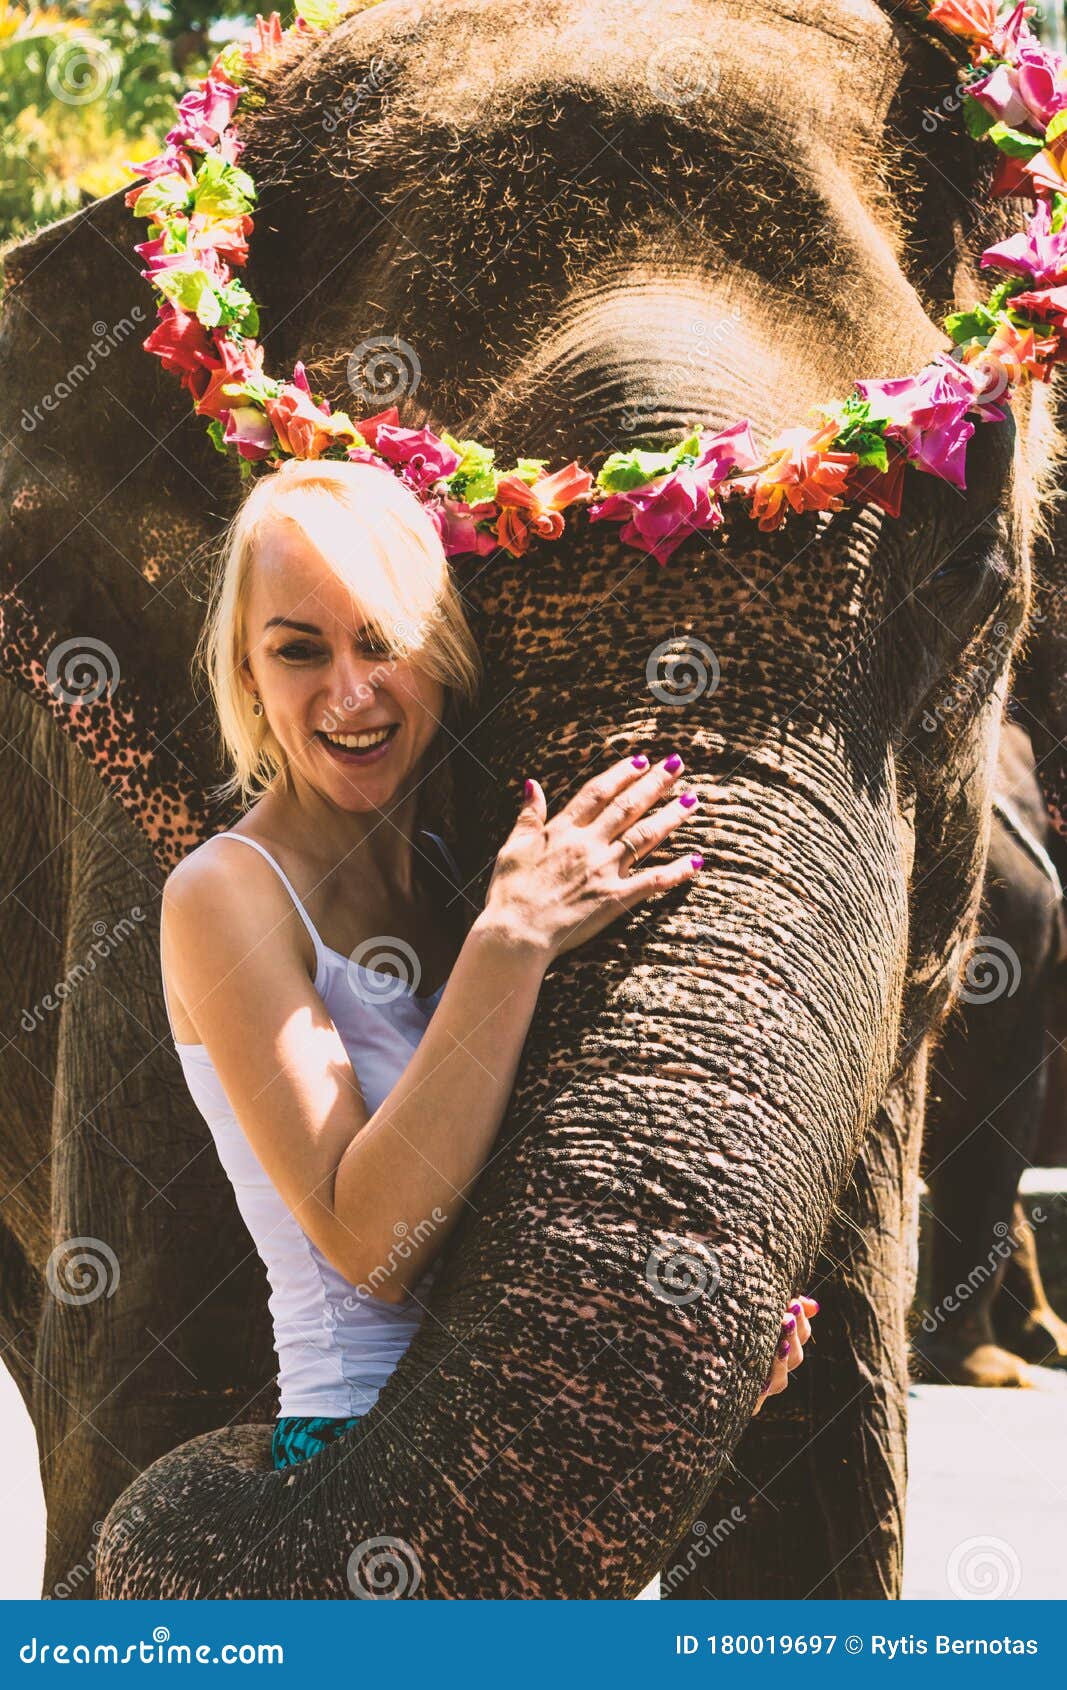 拥抱一头大象的女孩在密林 库存图片. 图片 包括有 少许, 环境, 纵向, 拥抱, 幸福, 女性, 哺乳动物 - 144997445